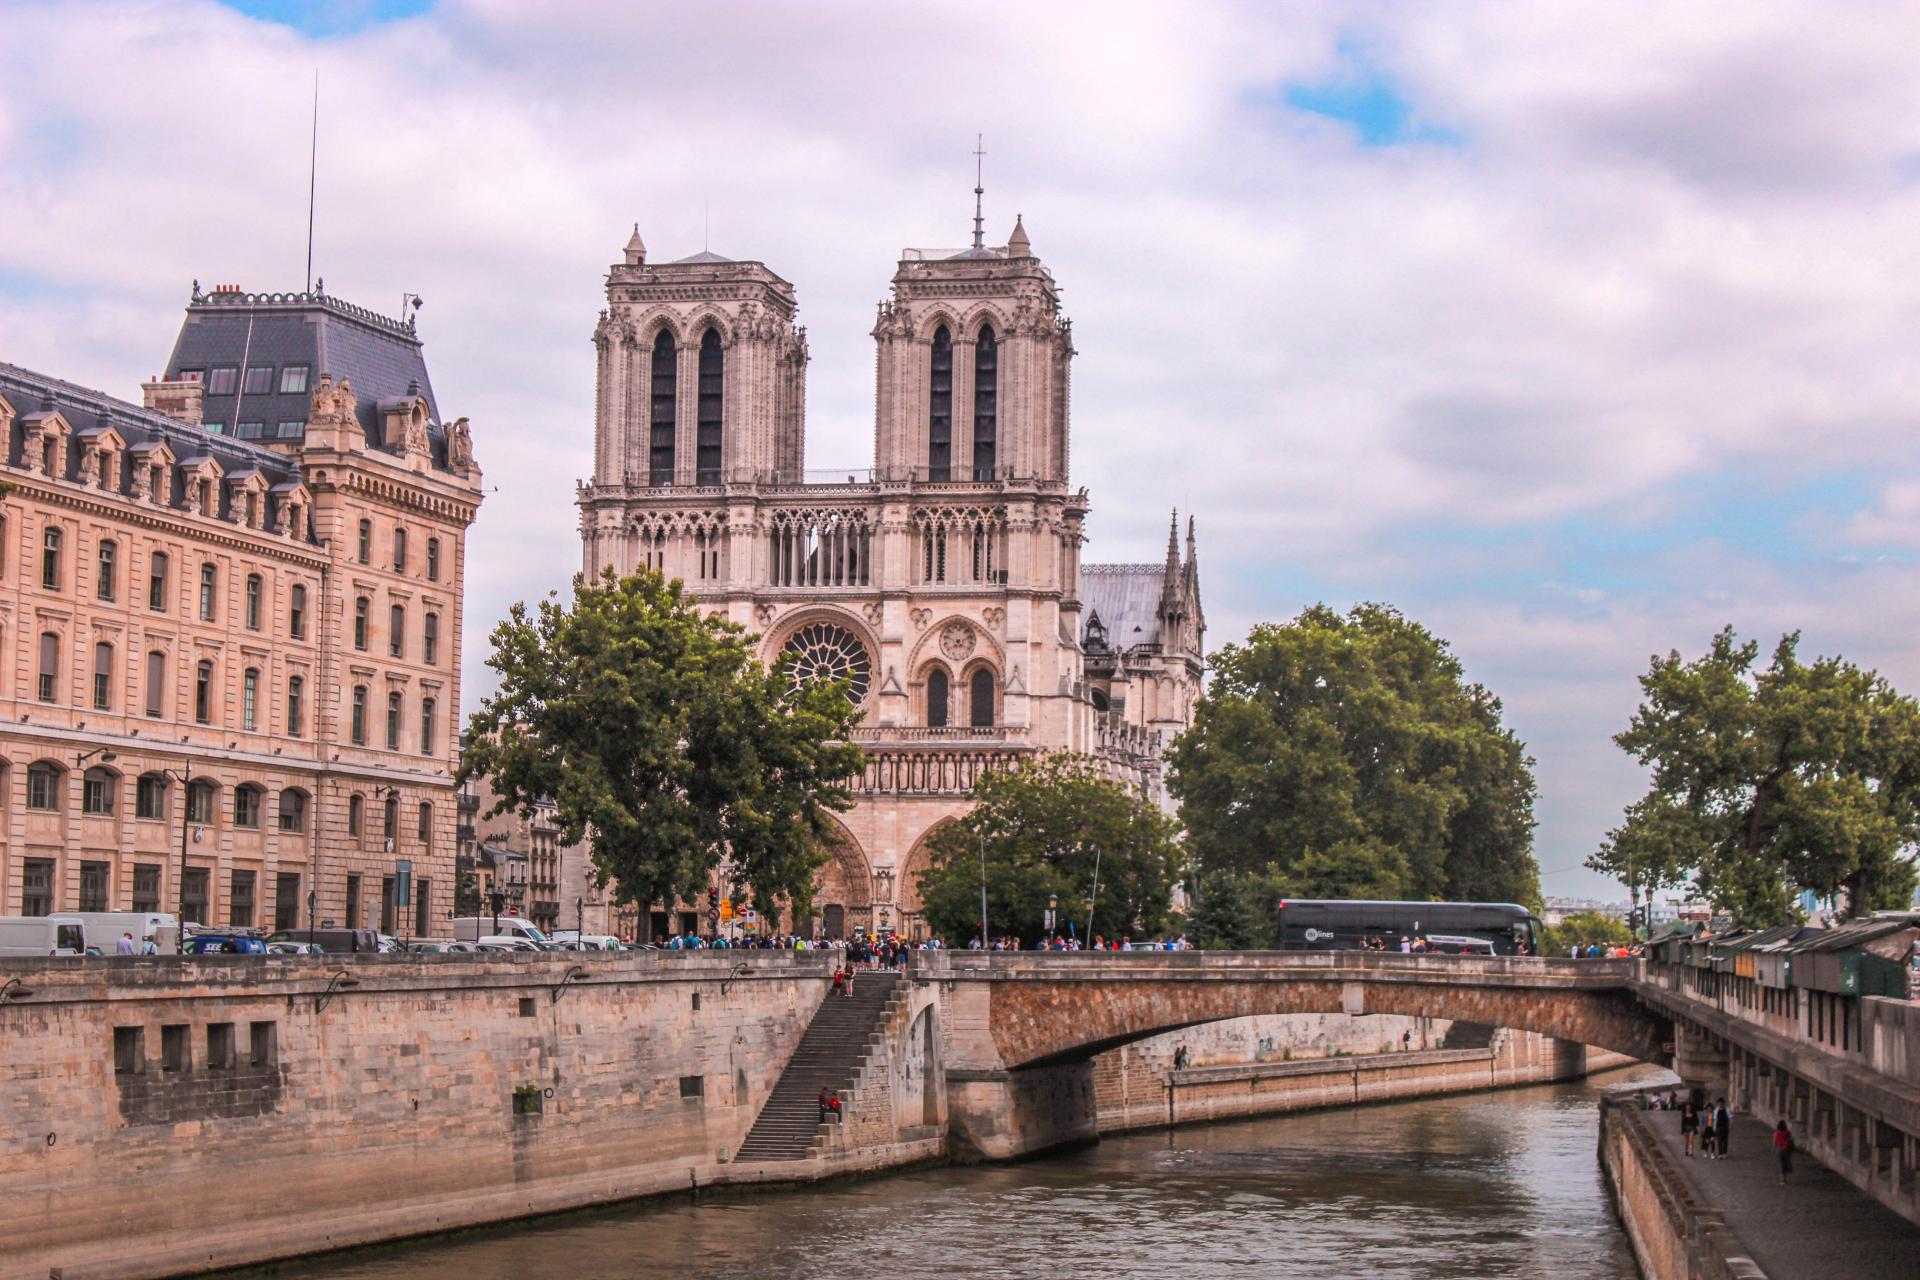 Notre Dame Cathedral at the Cité de l'Architecture